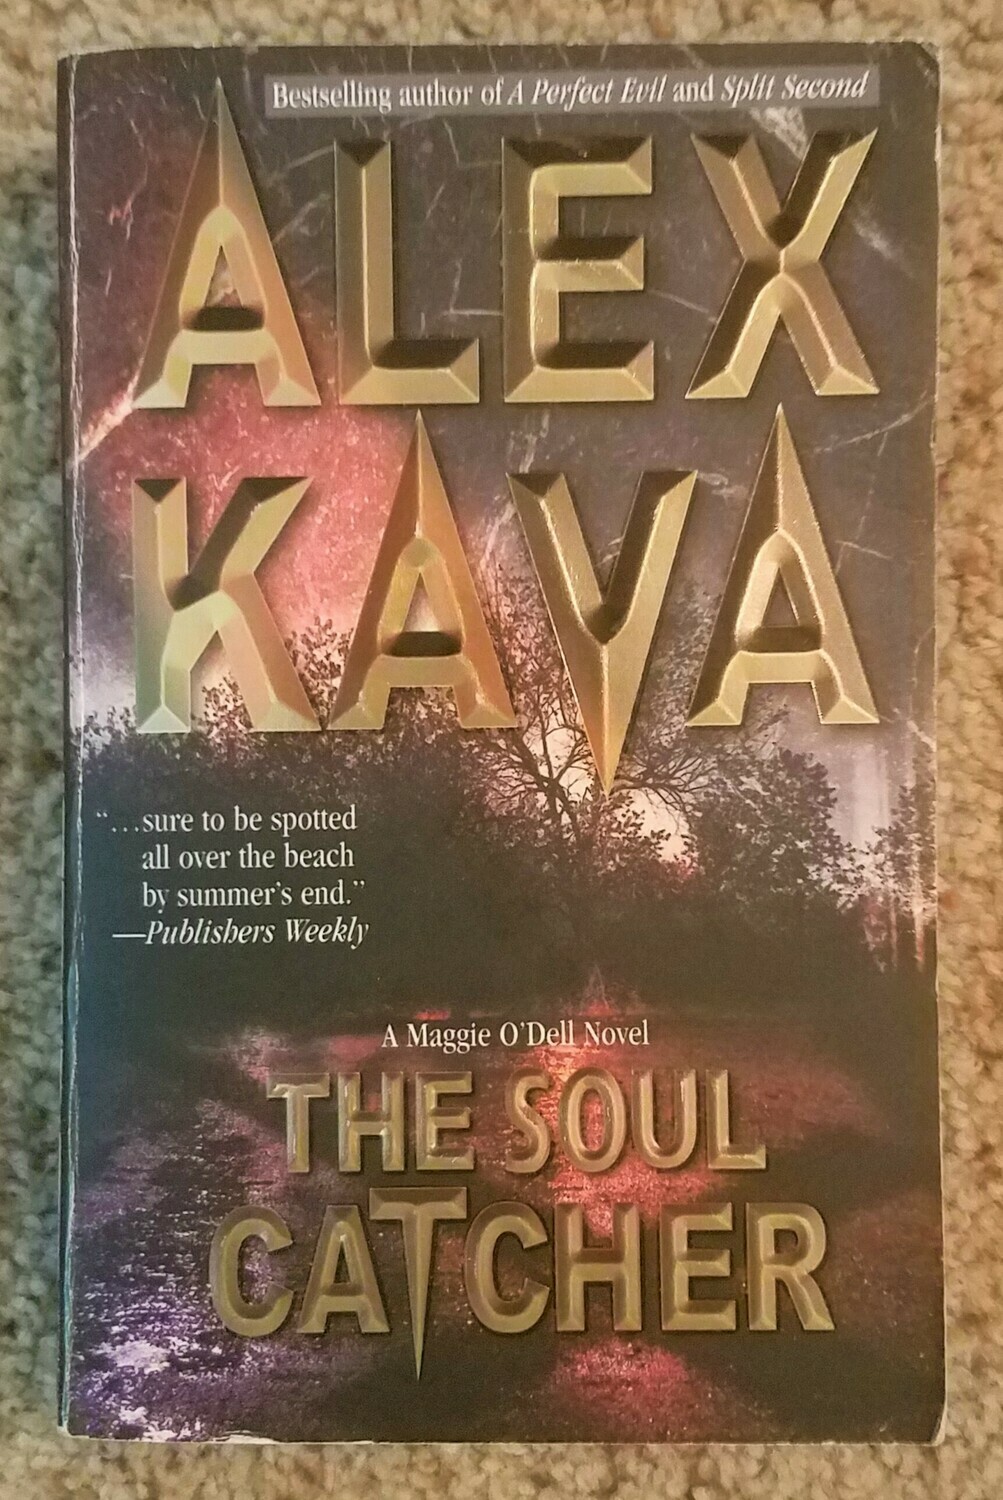 The Soul Catcher by Alex Kava